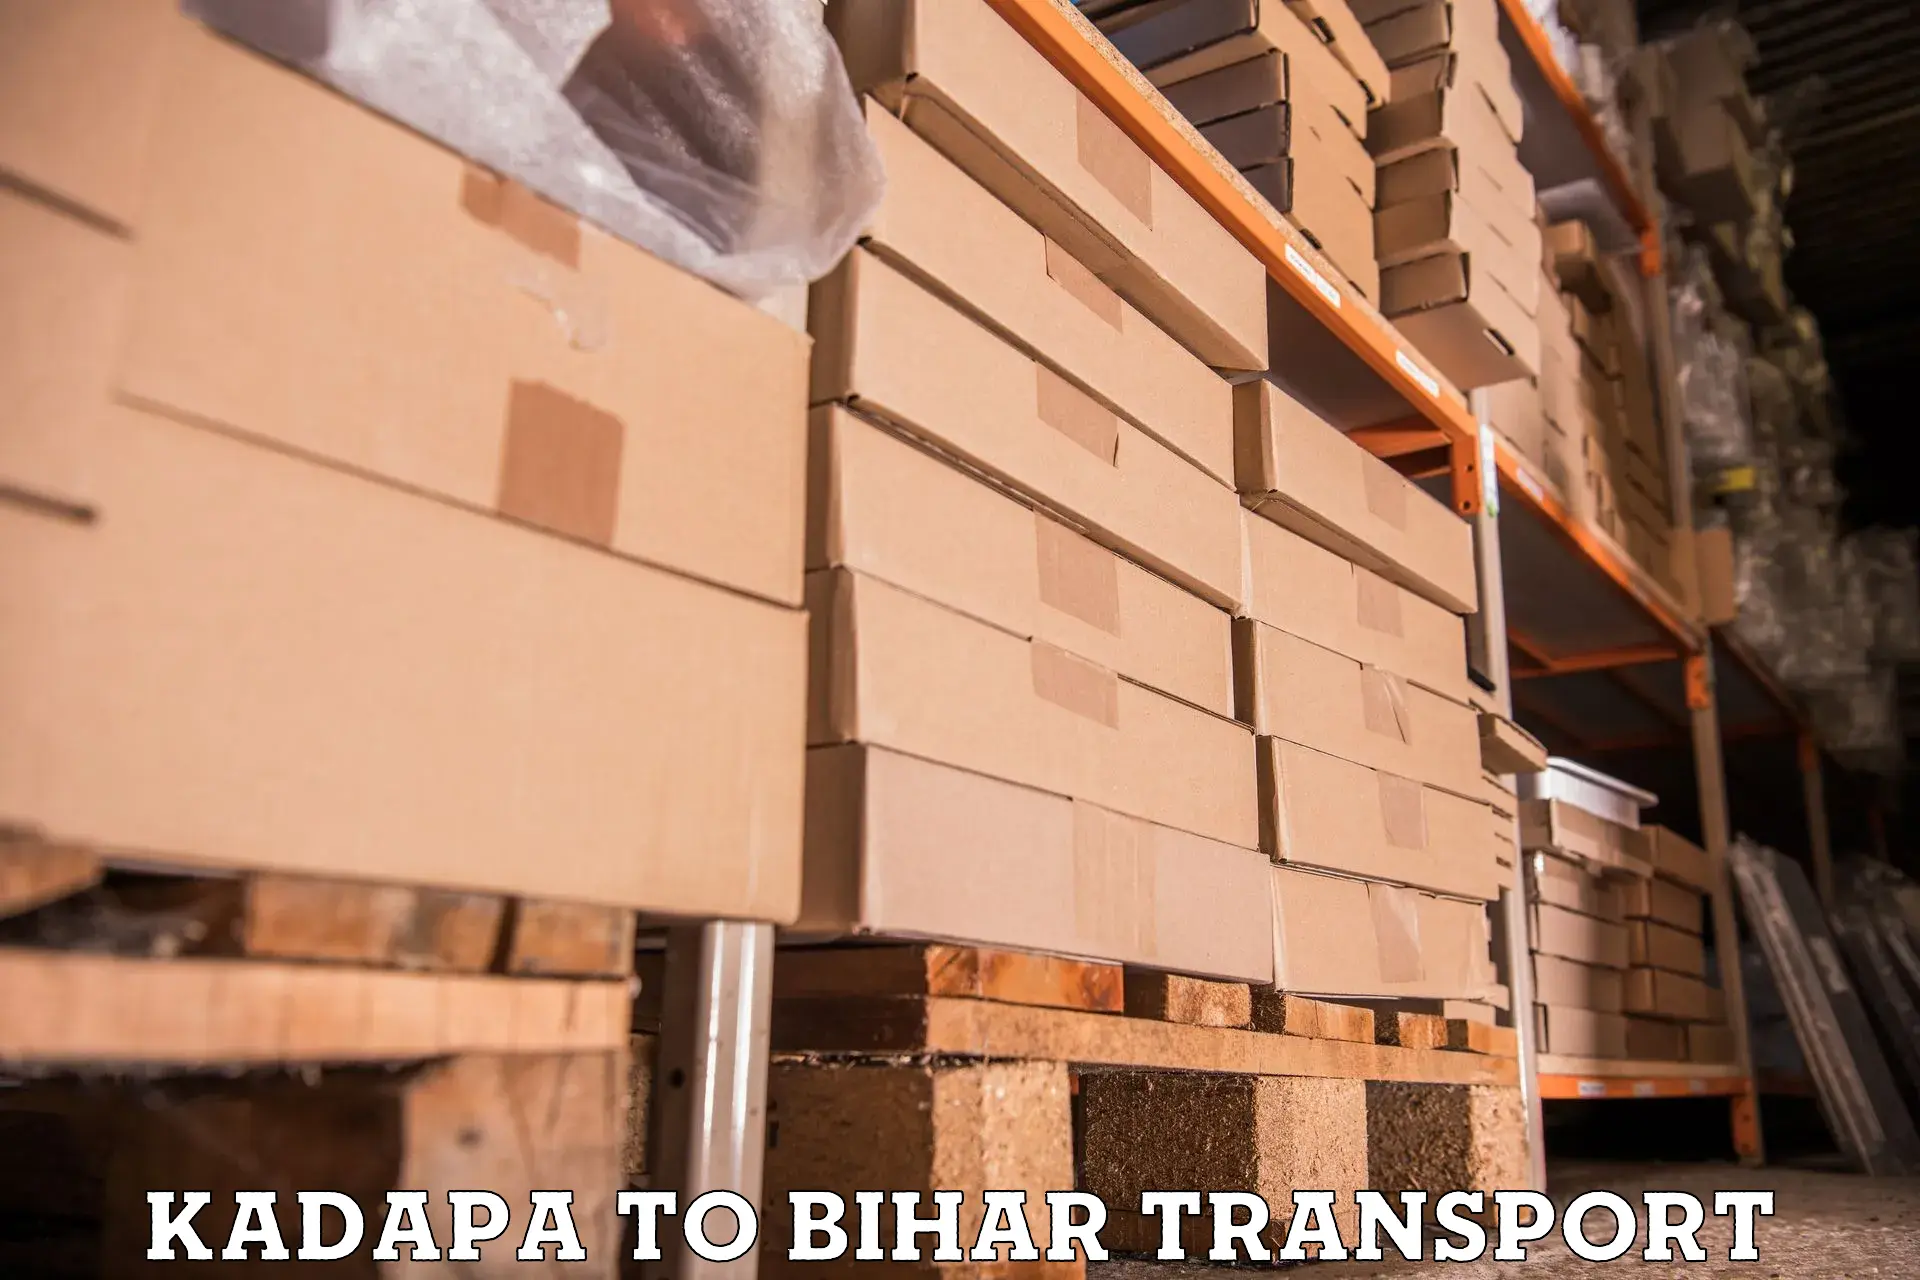 Bike transfer Kadapa to Bihar